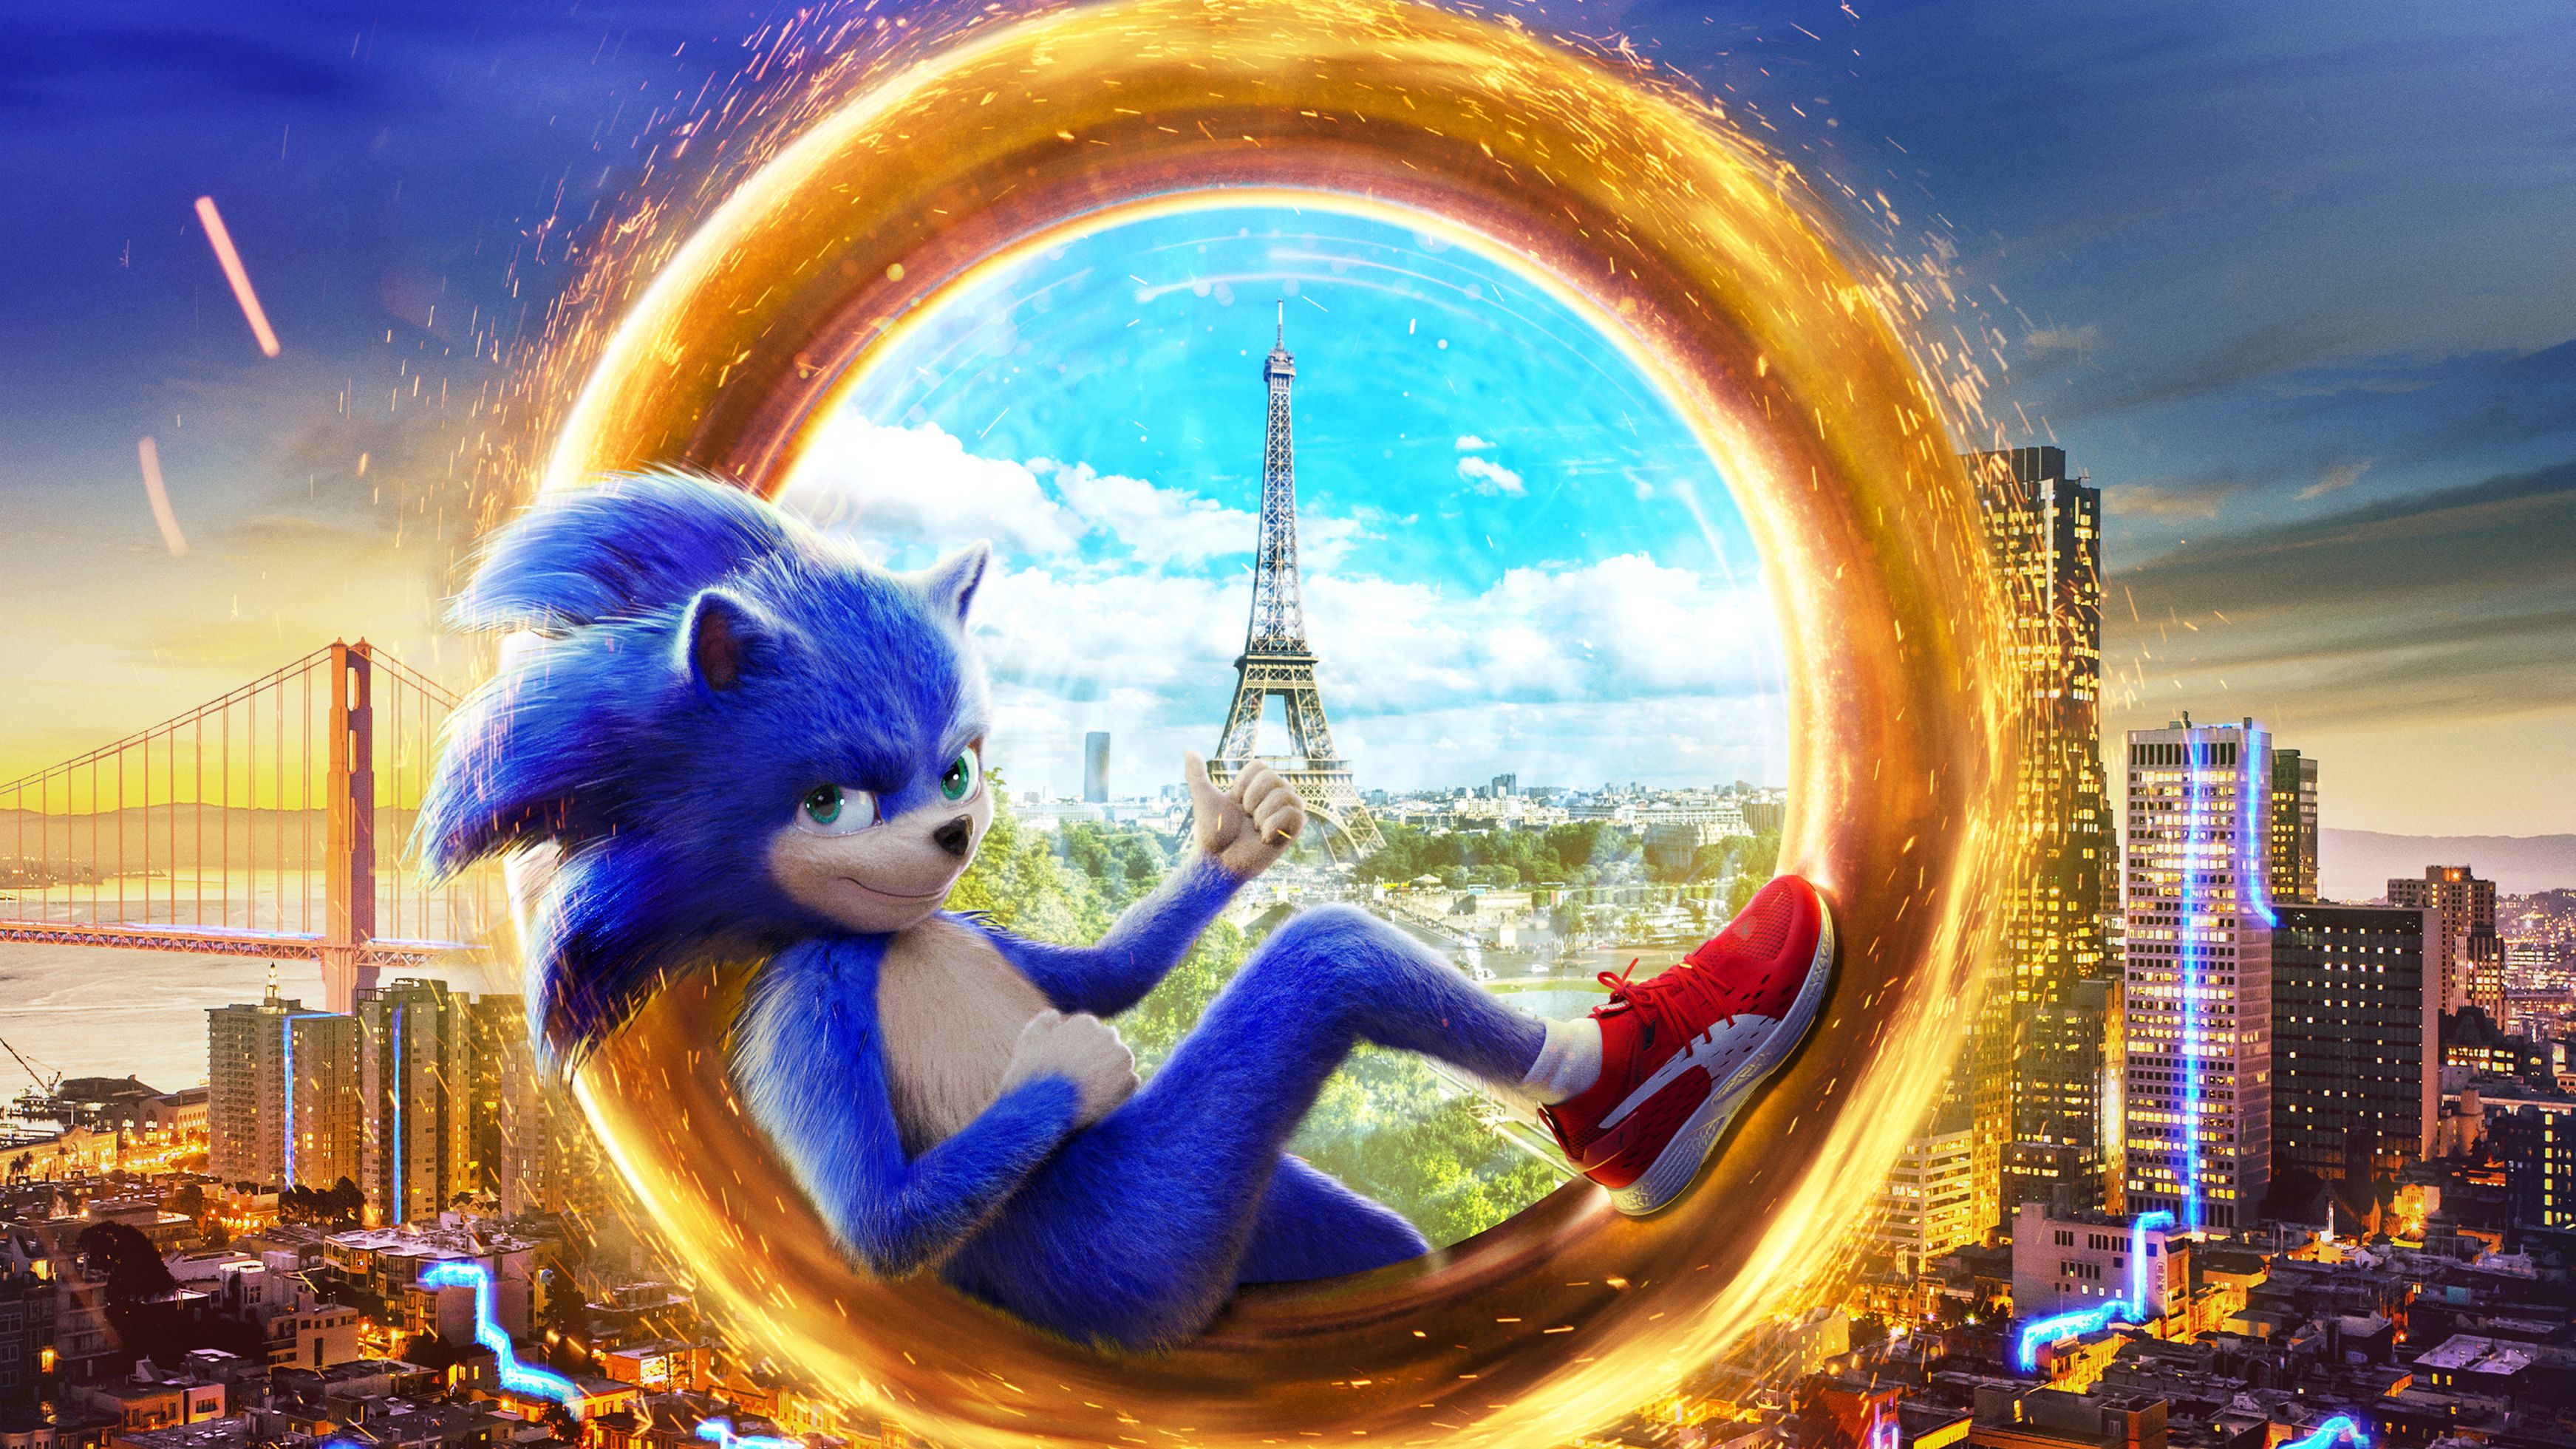 2019 Sonic The Hedgehog 4k, películas HD, fondos de pantalla 4k, imágenes